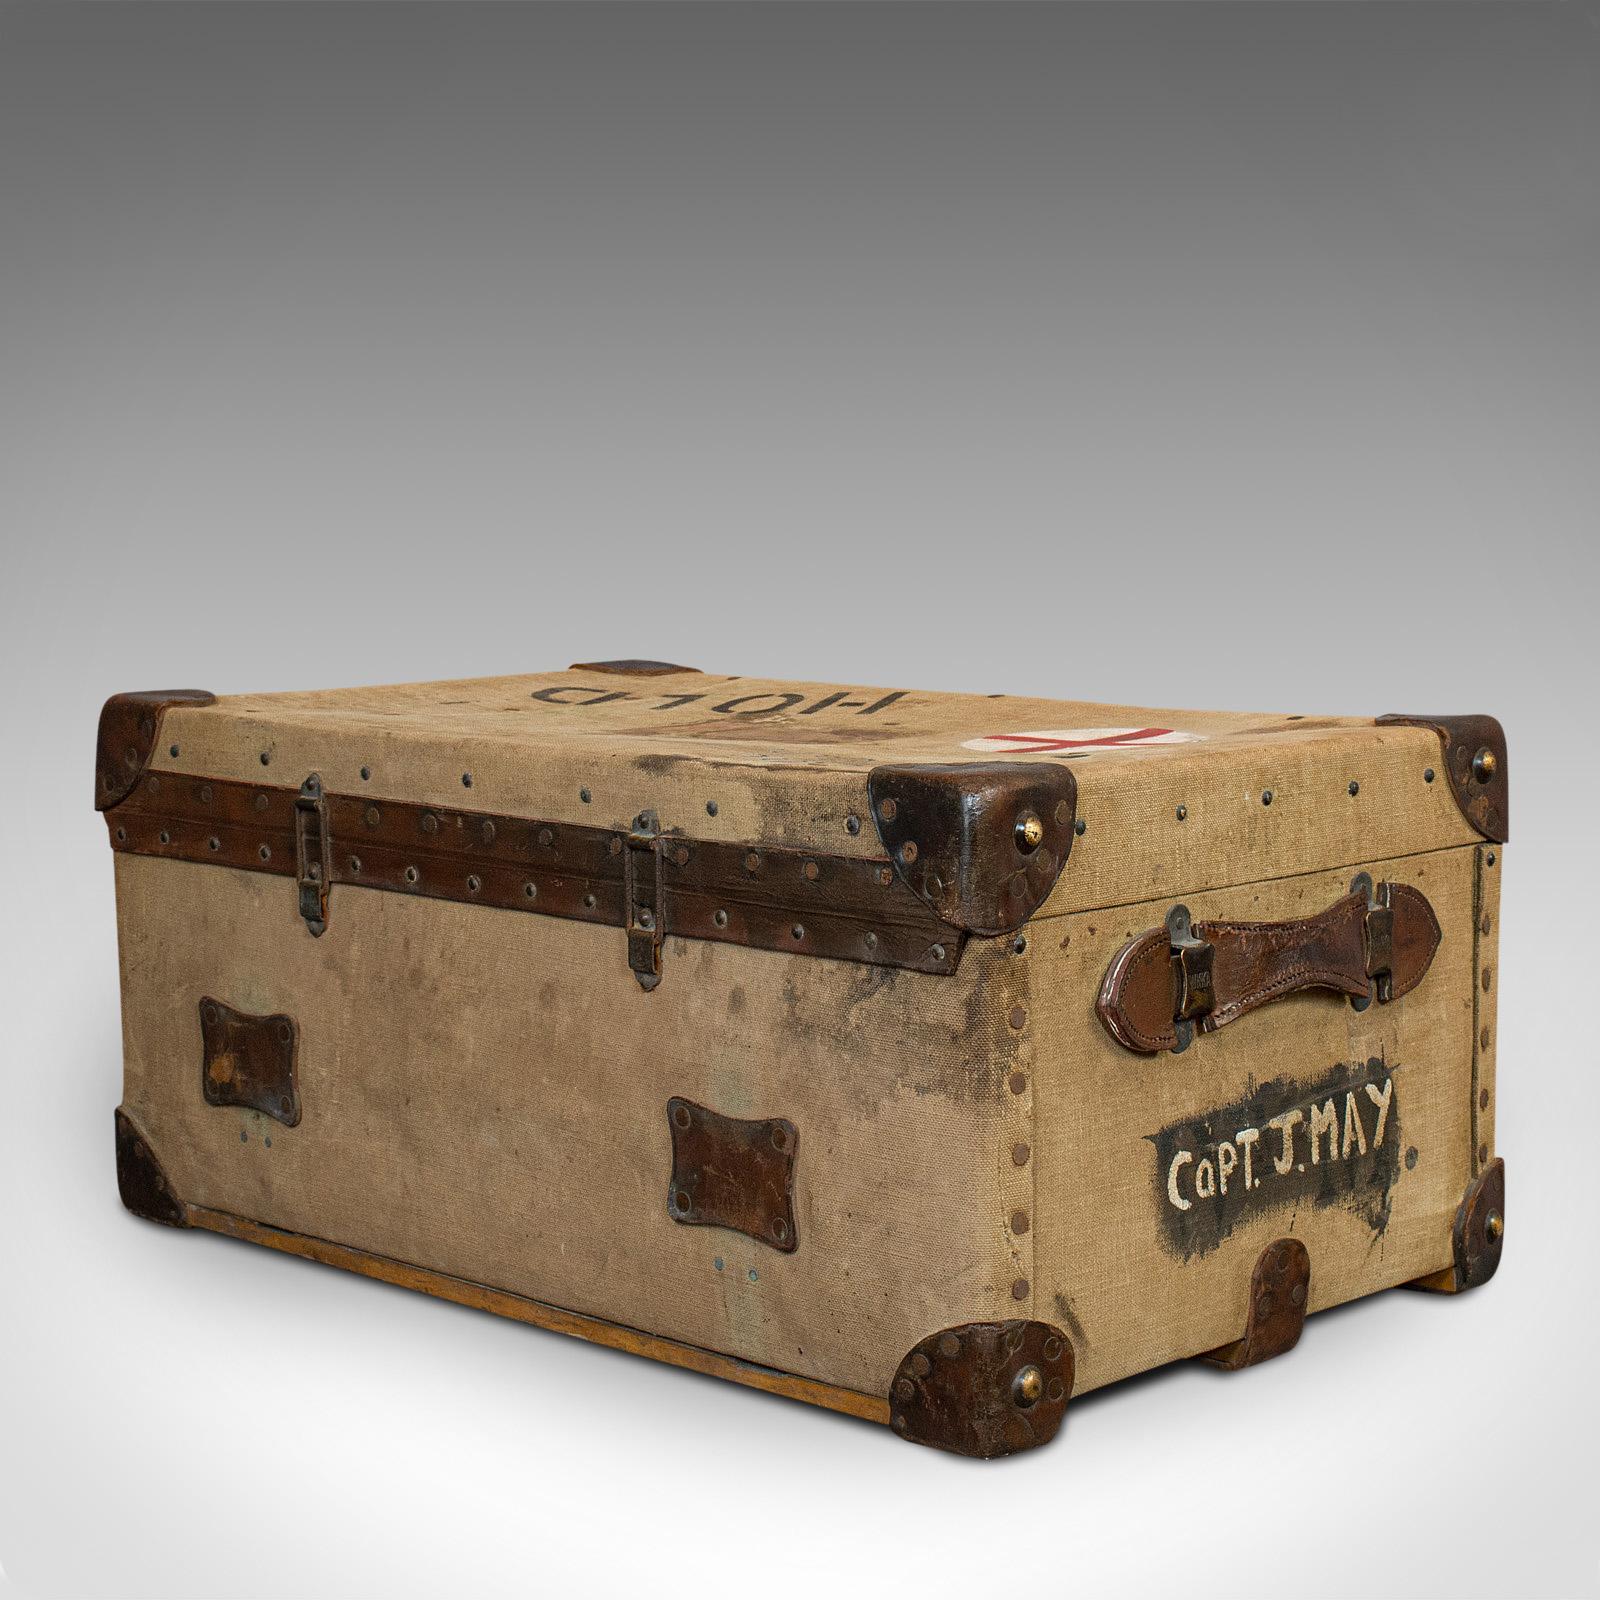 20th Century Antique Shipping Trunk, English, Canvas Travel Case, Pukka Luggage, Edwardian